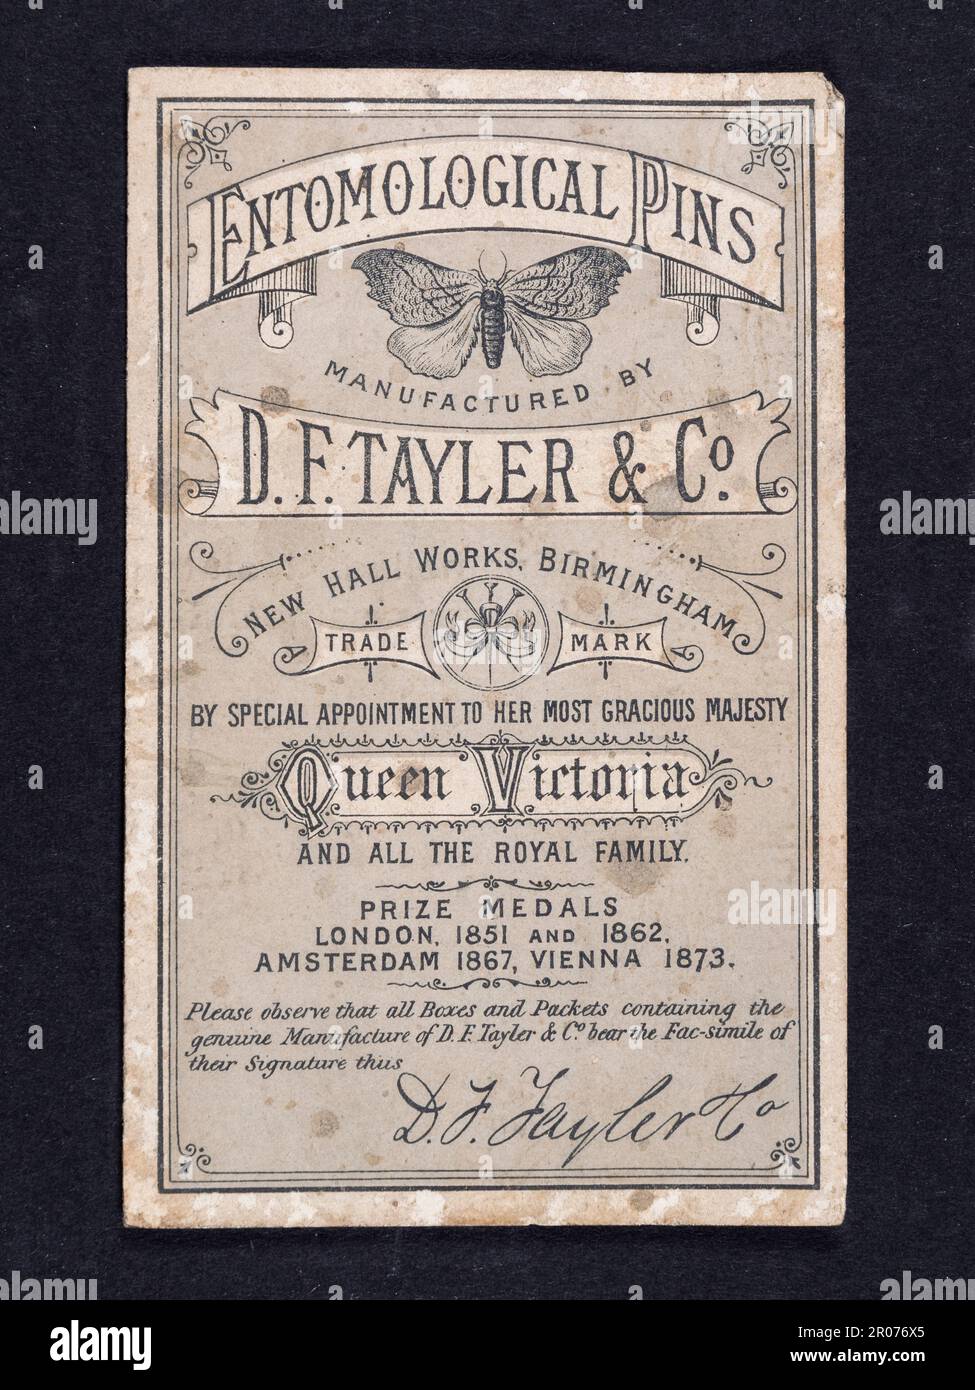 Antike entomologische Stifte, hergestellt von DF Tayler & Co., zur Insektenanzeige, London, UK. Stockfoto